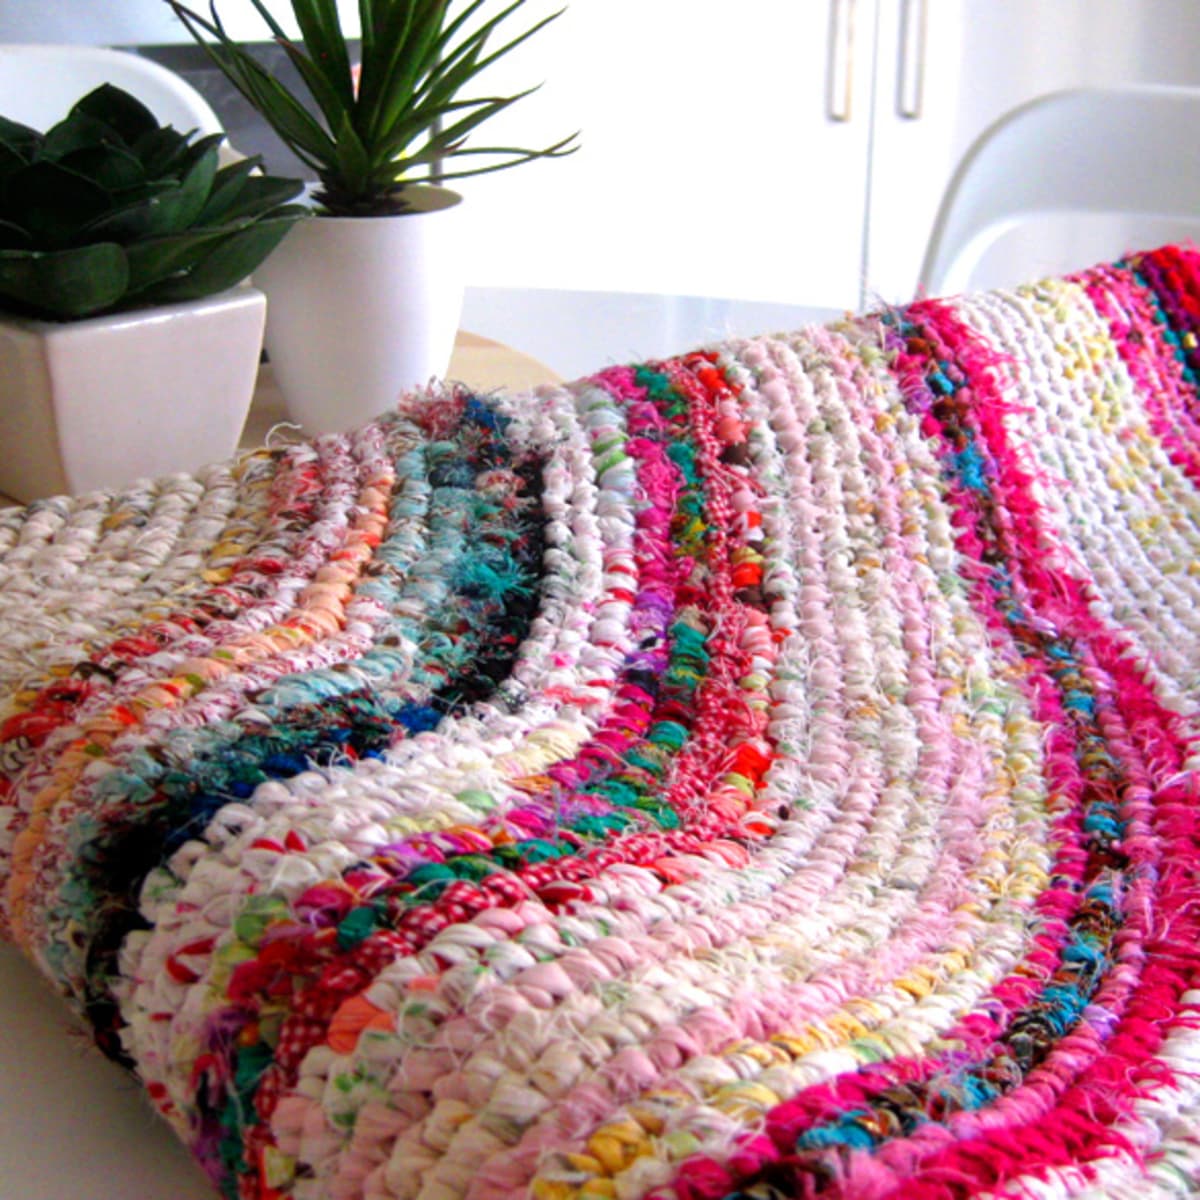 How to cut felt with your Cricut - Felt eyes for Crochet, knitting